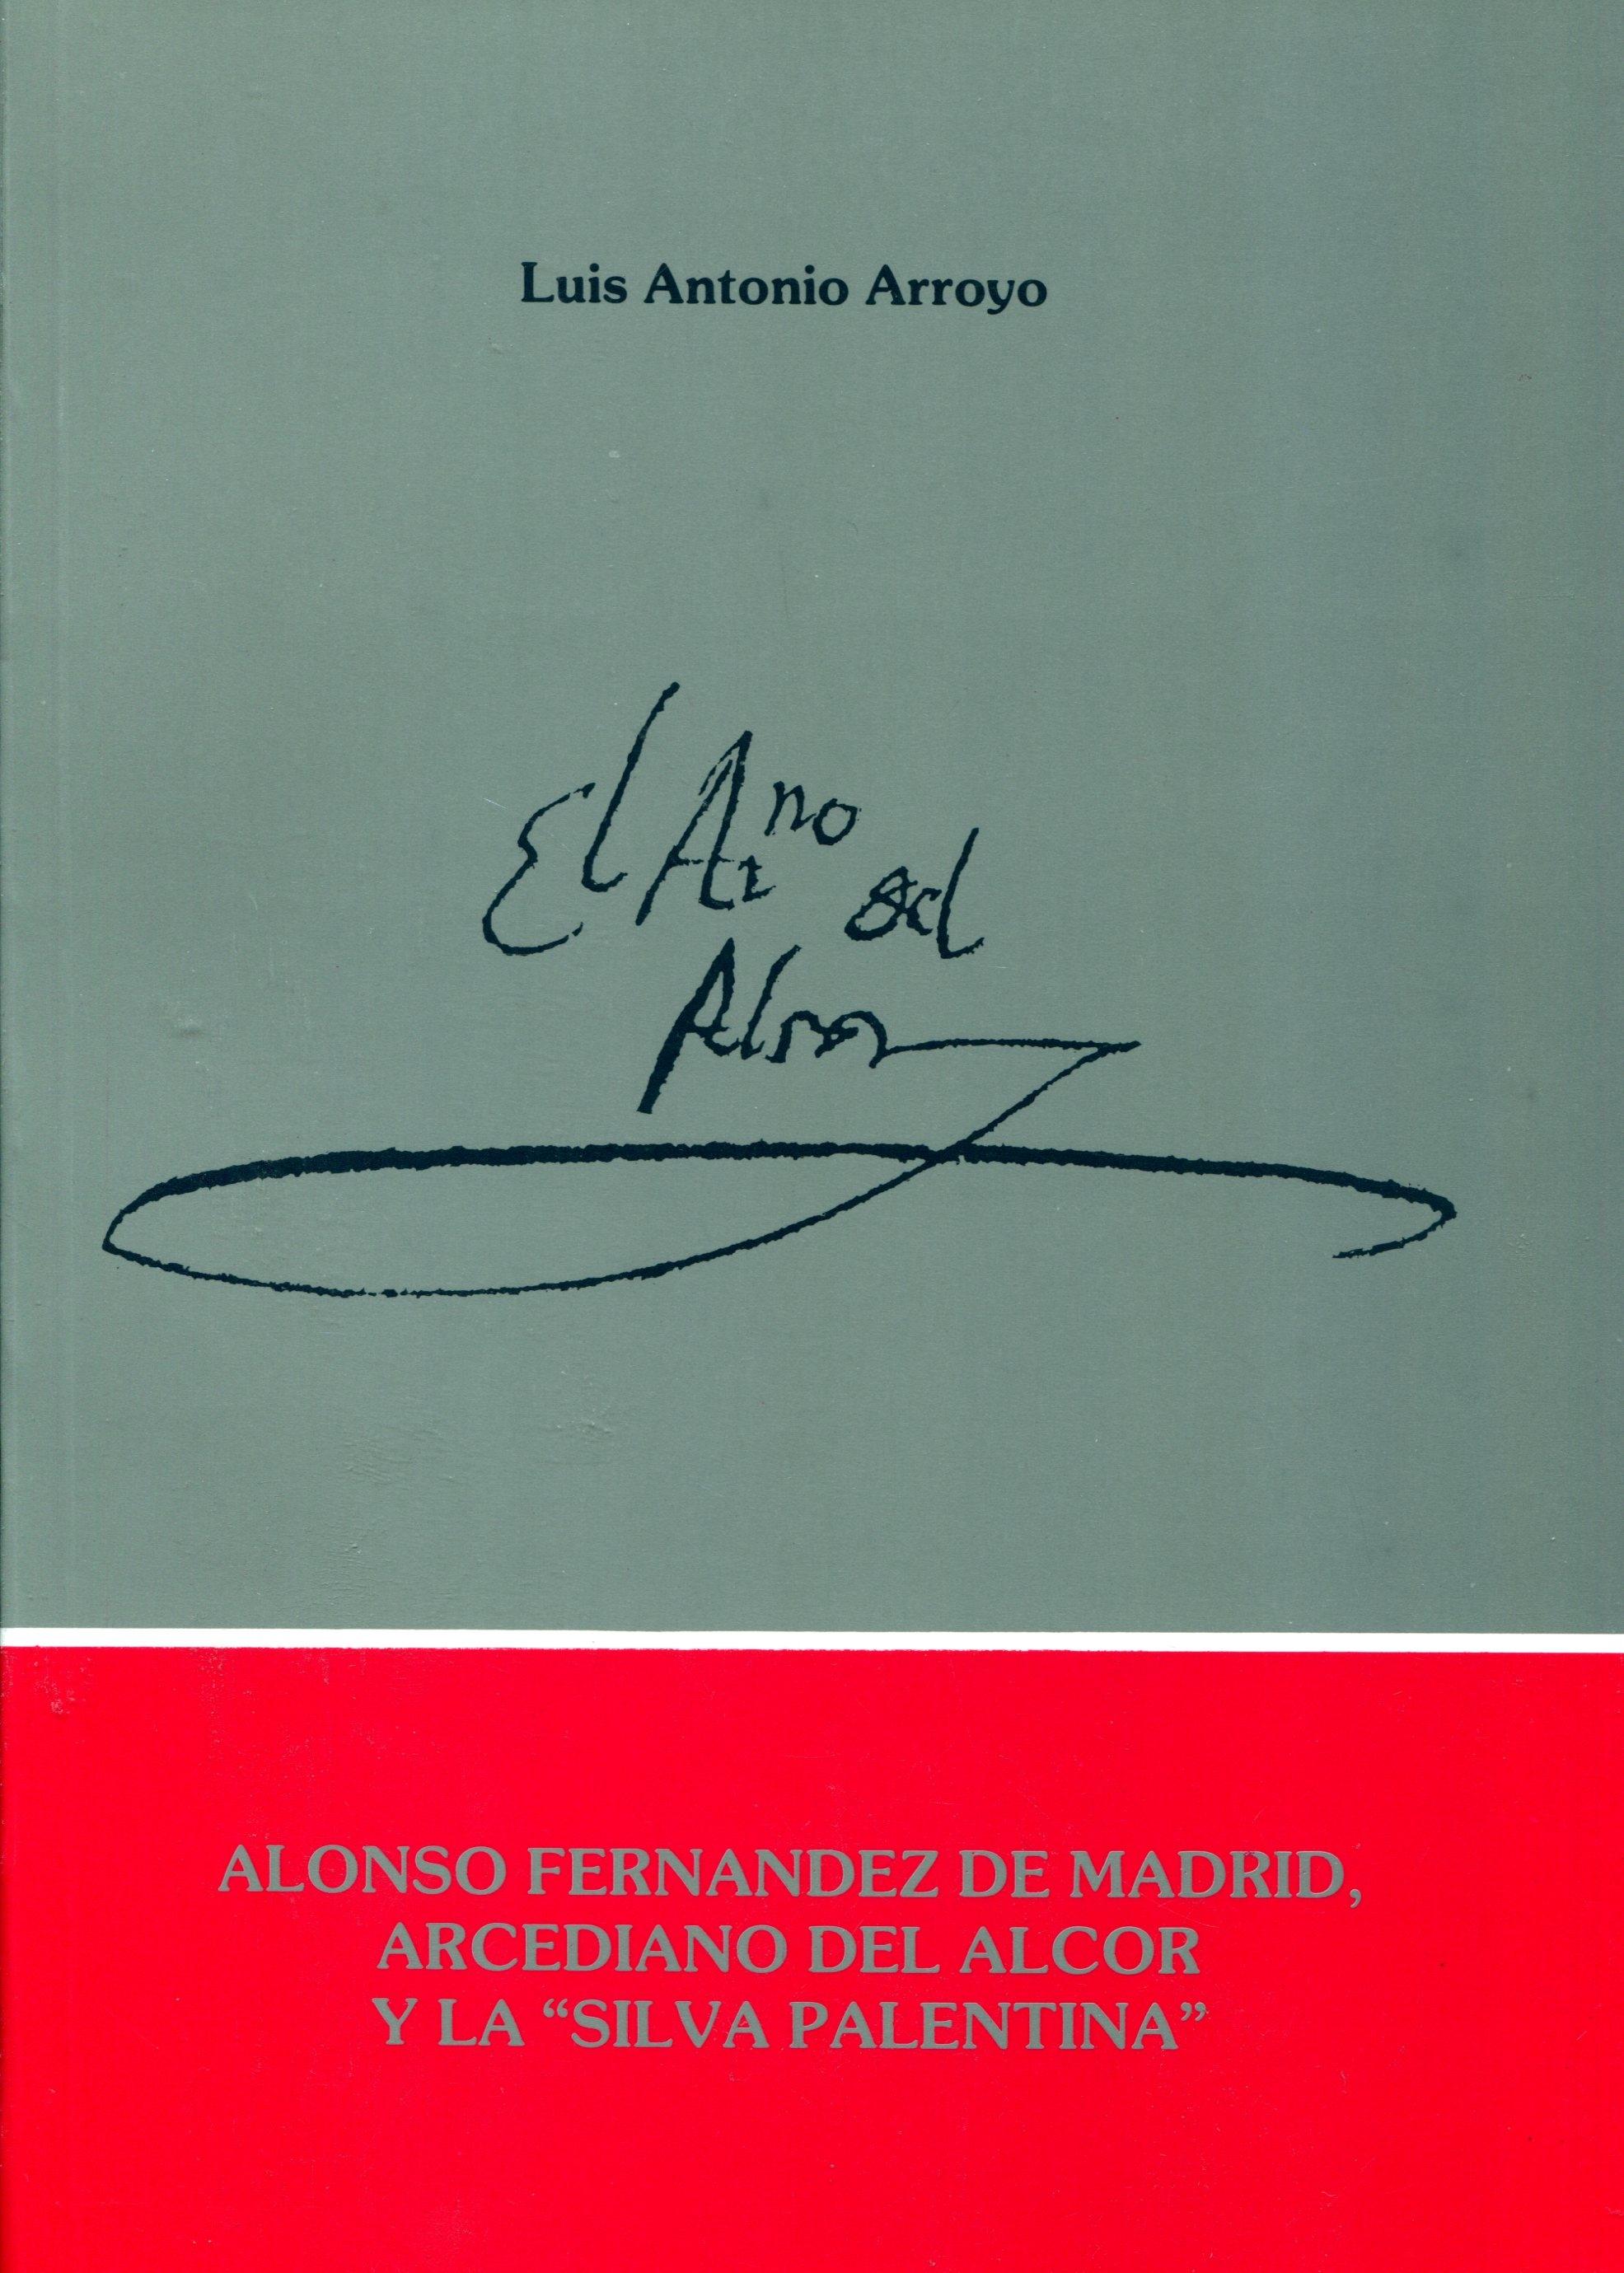 Alonso Fernández de Madrid, Arcediano del Alcor y La Silva Palentina. 